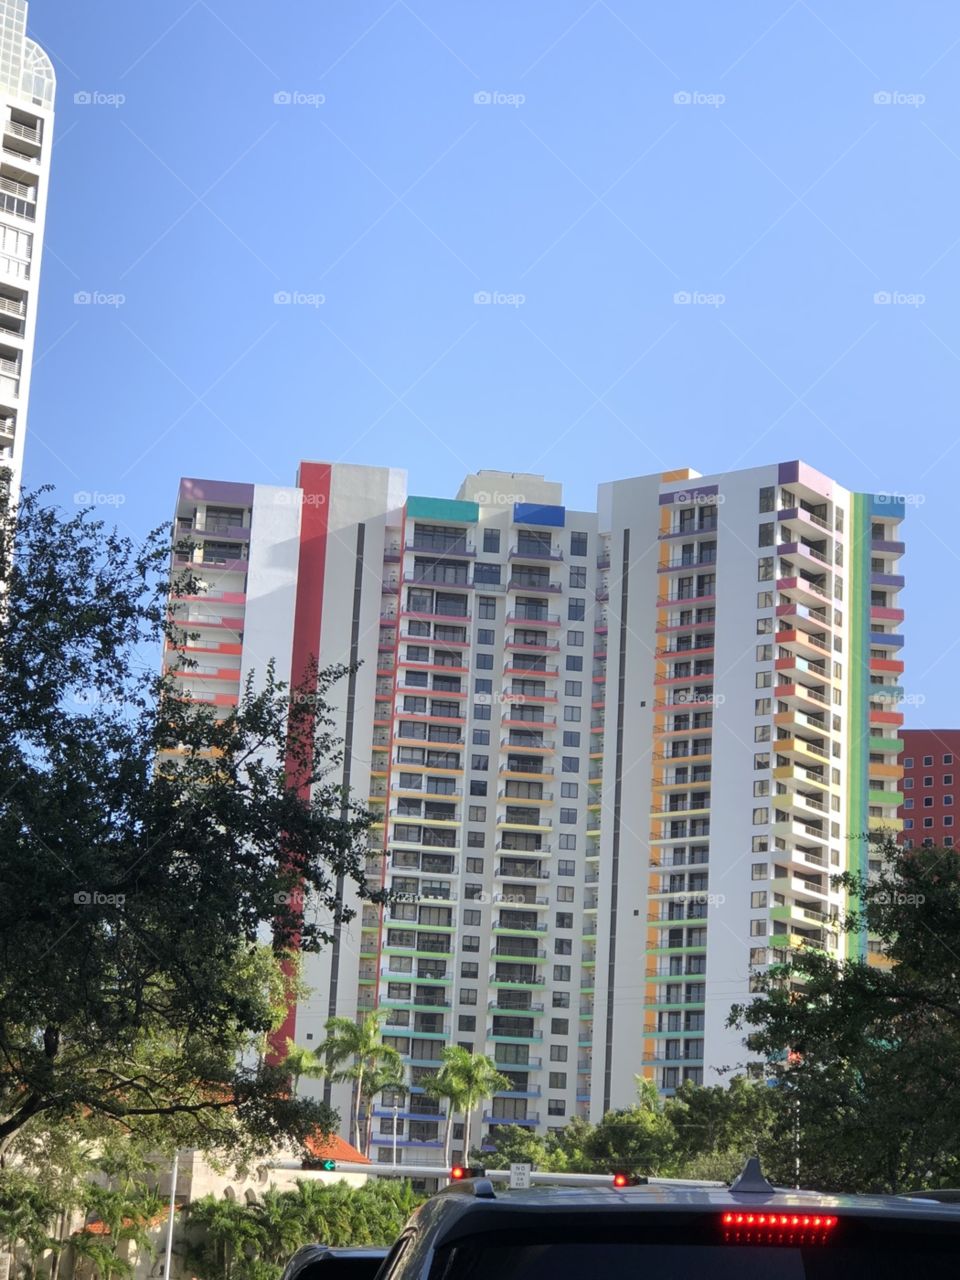 Miami’s rainbow building